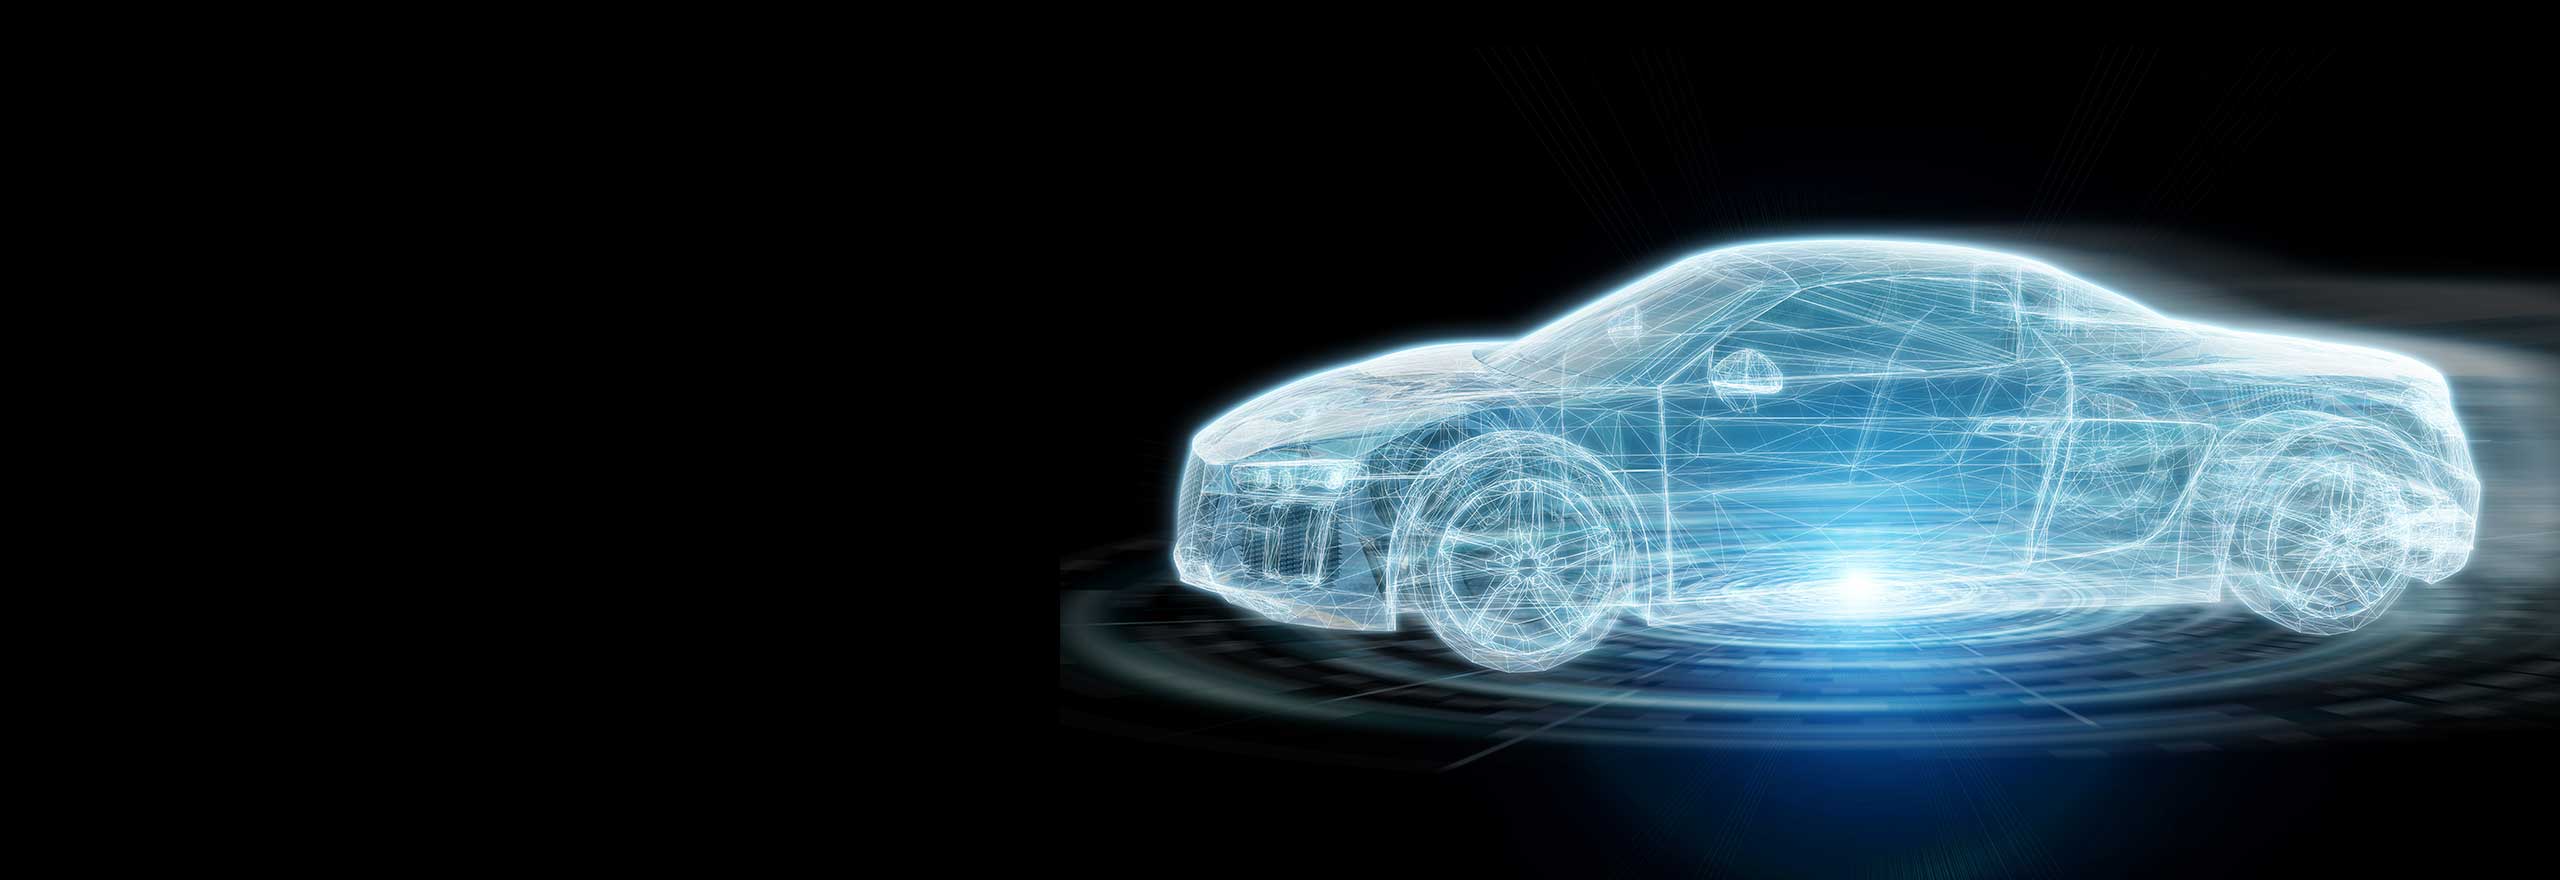 Modello digitale dell'esterno dell'auto per la simulazione